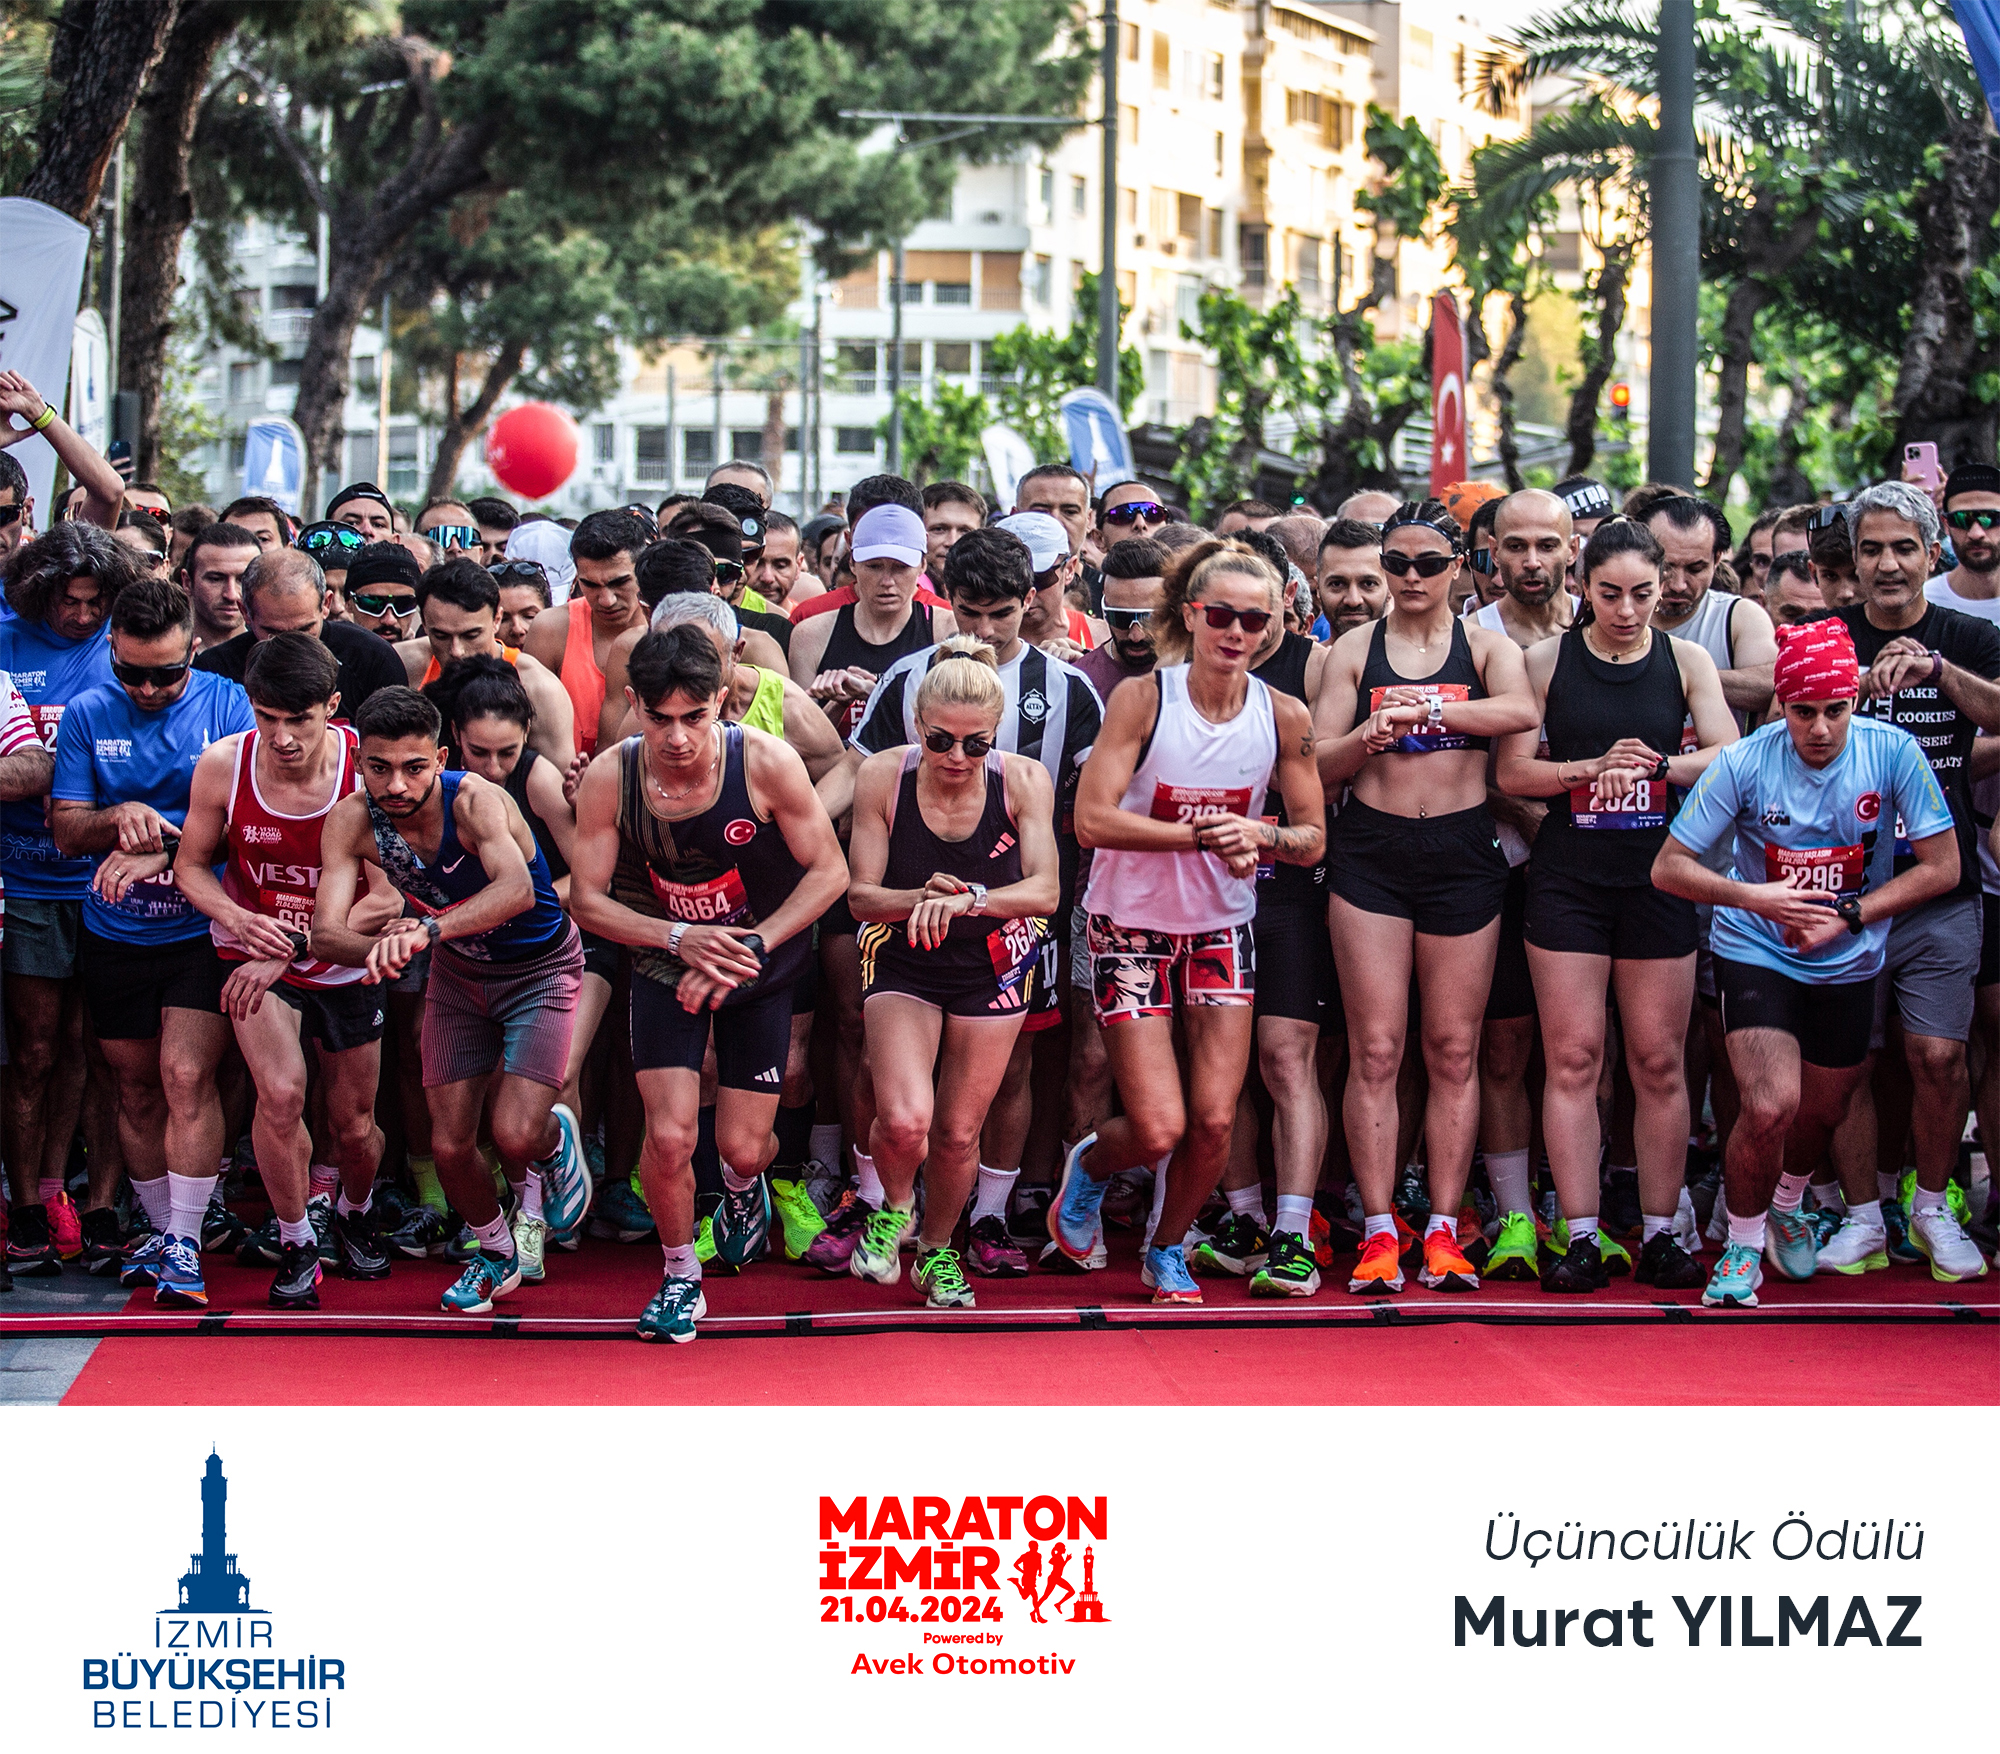 Maraton İzmir'in en güzel kareleri seçildi: kazananlar belli!